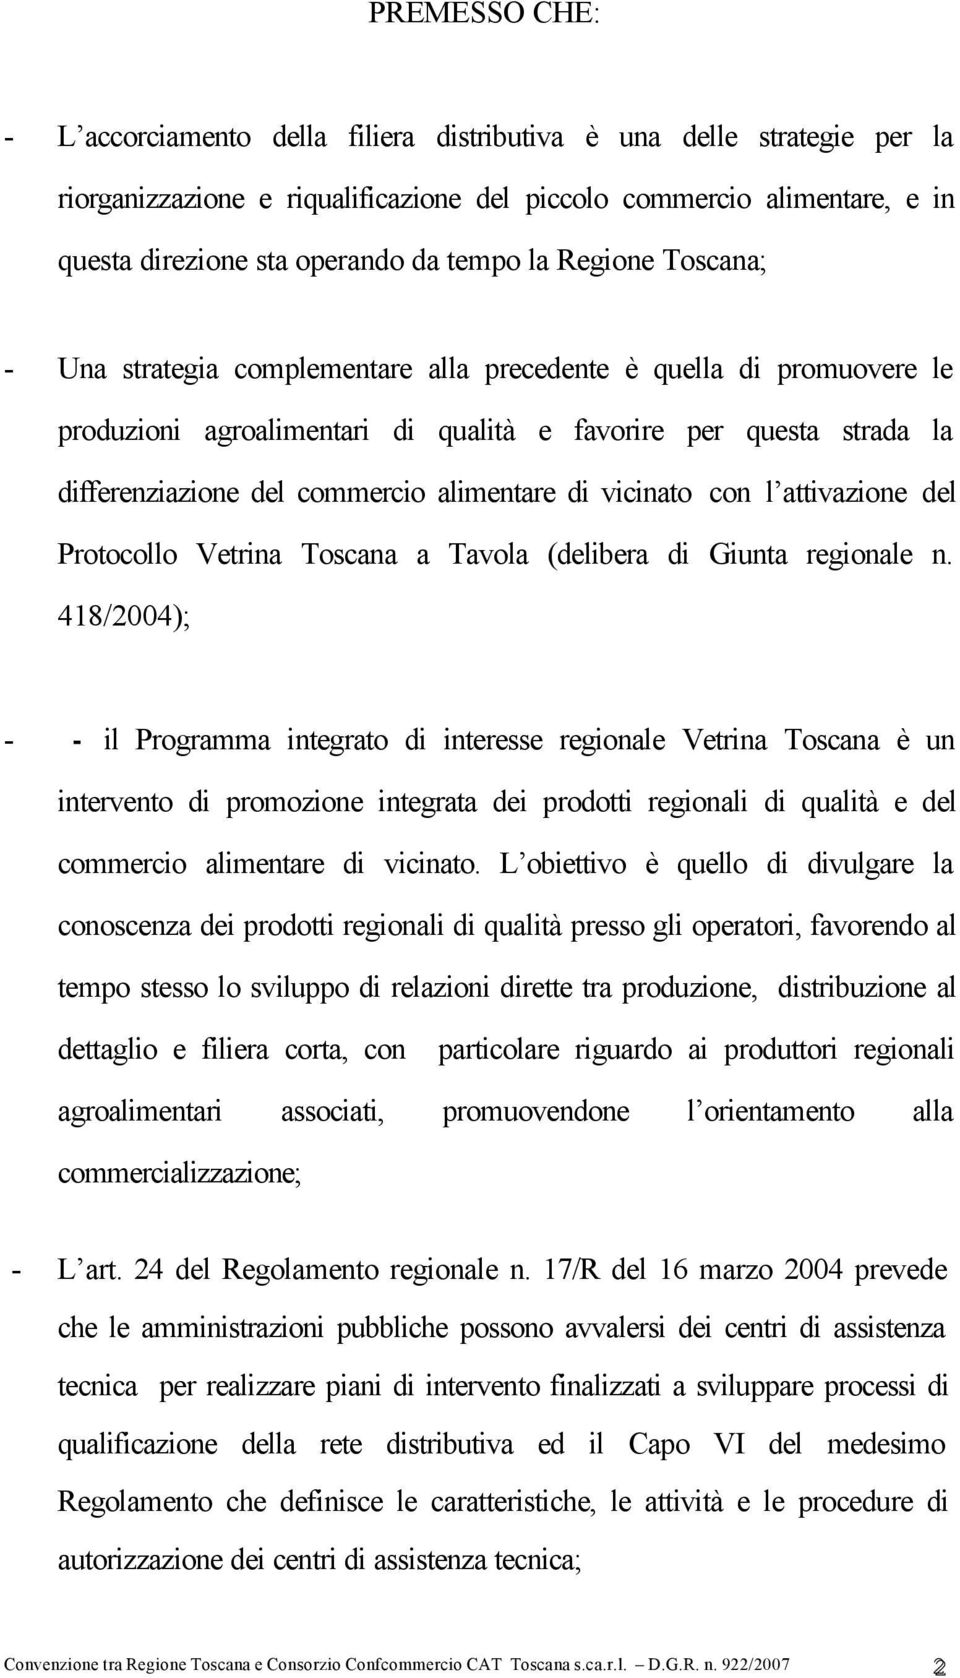 alimentare di vicinato con l attivazione del Protocollo Vetrina Toscana a Tavola (delibera di Giunta regionale n.